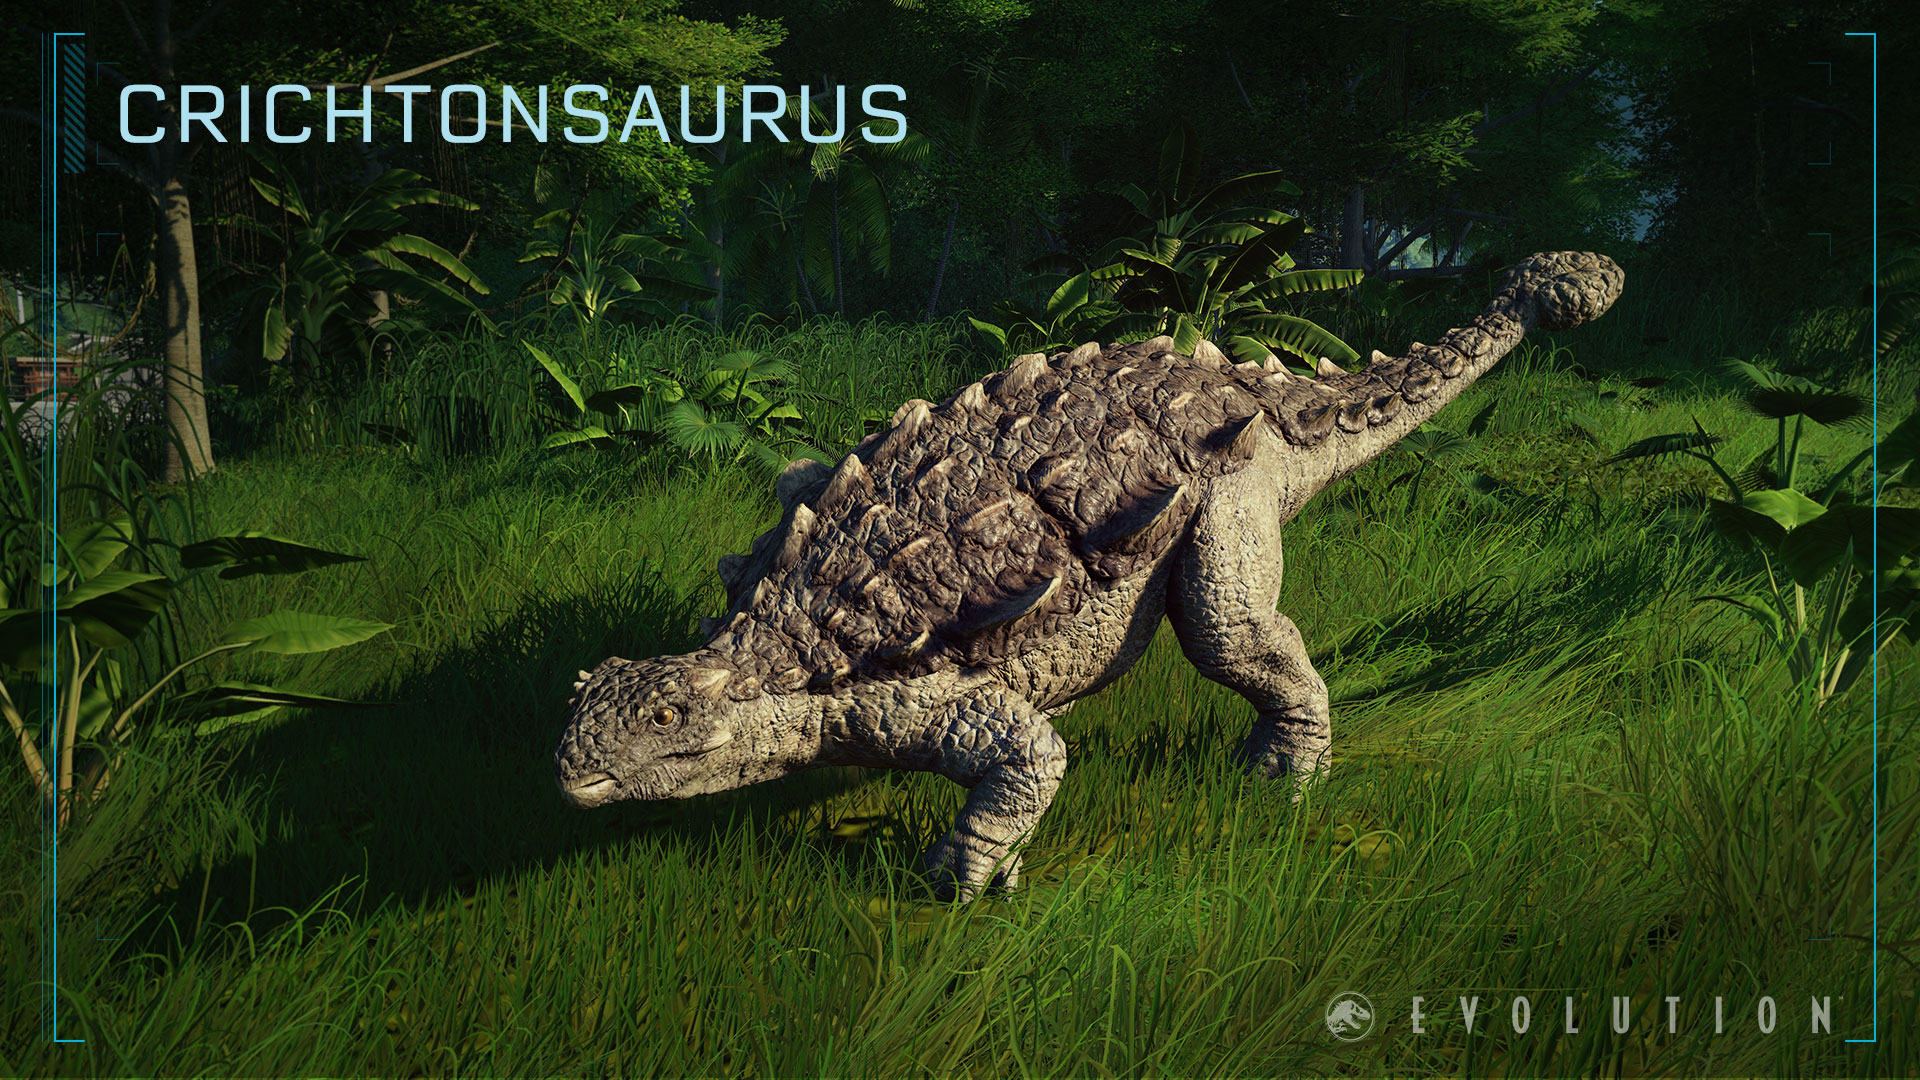 Jurassic World Evolution - Deluxe Dinosaur Pack screenshot